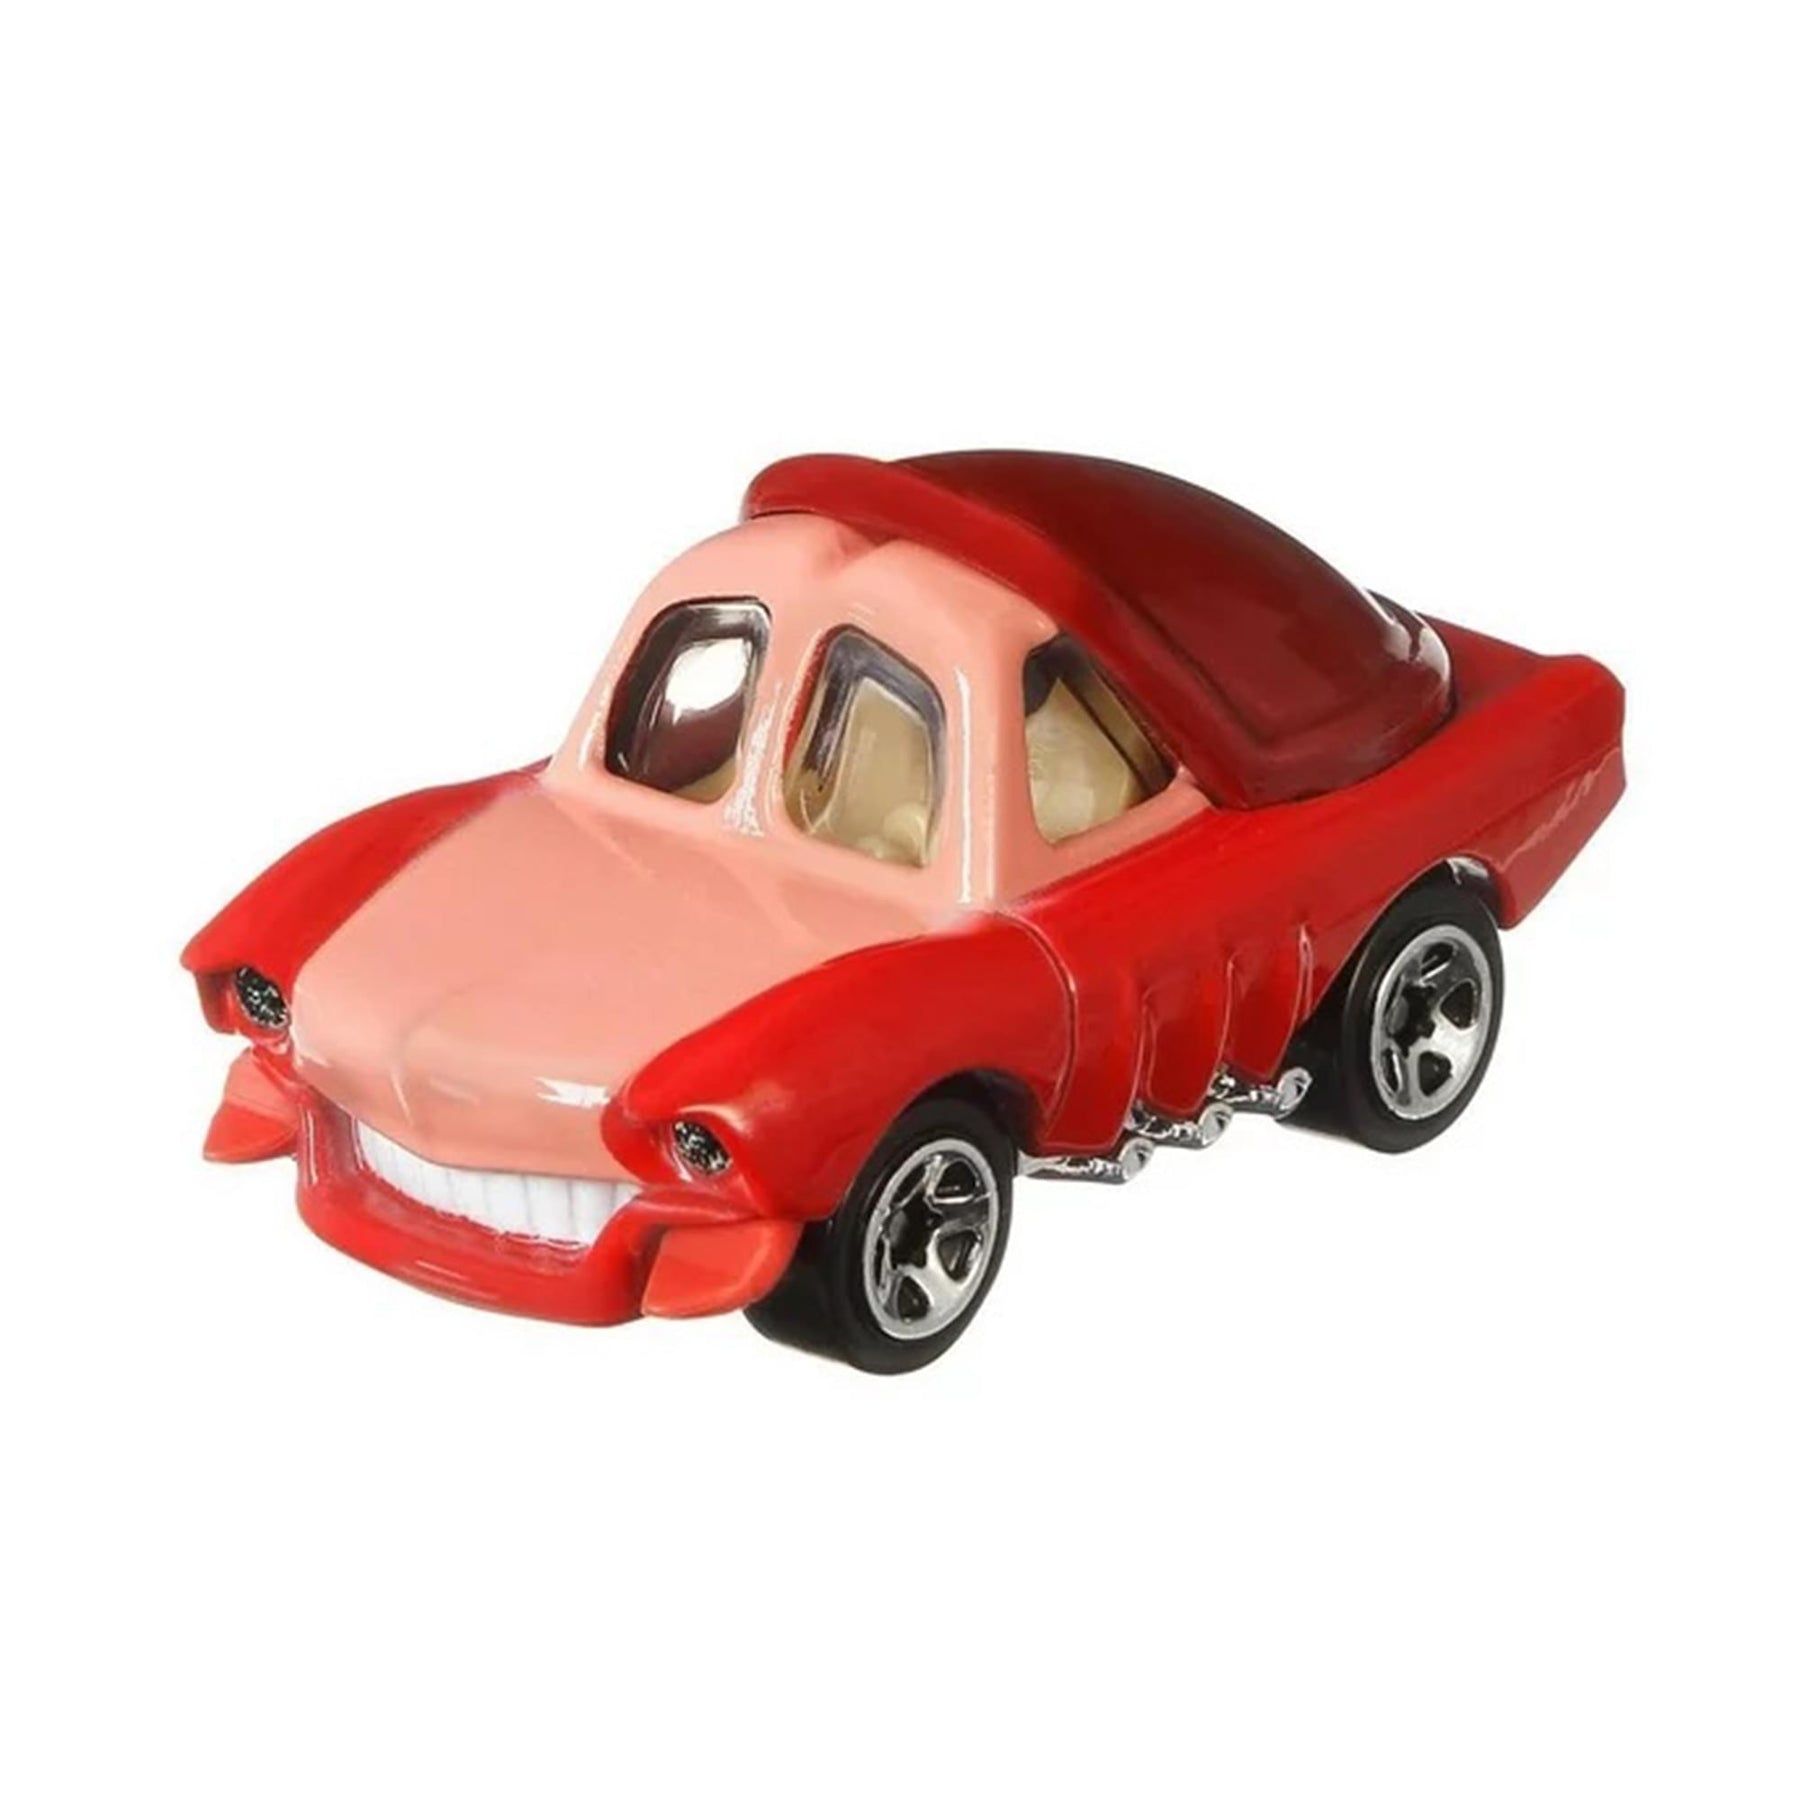 Disney Hot Wheels Character Car | Sebastian